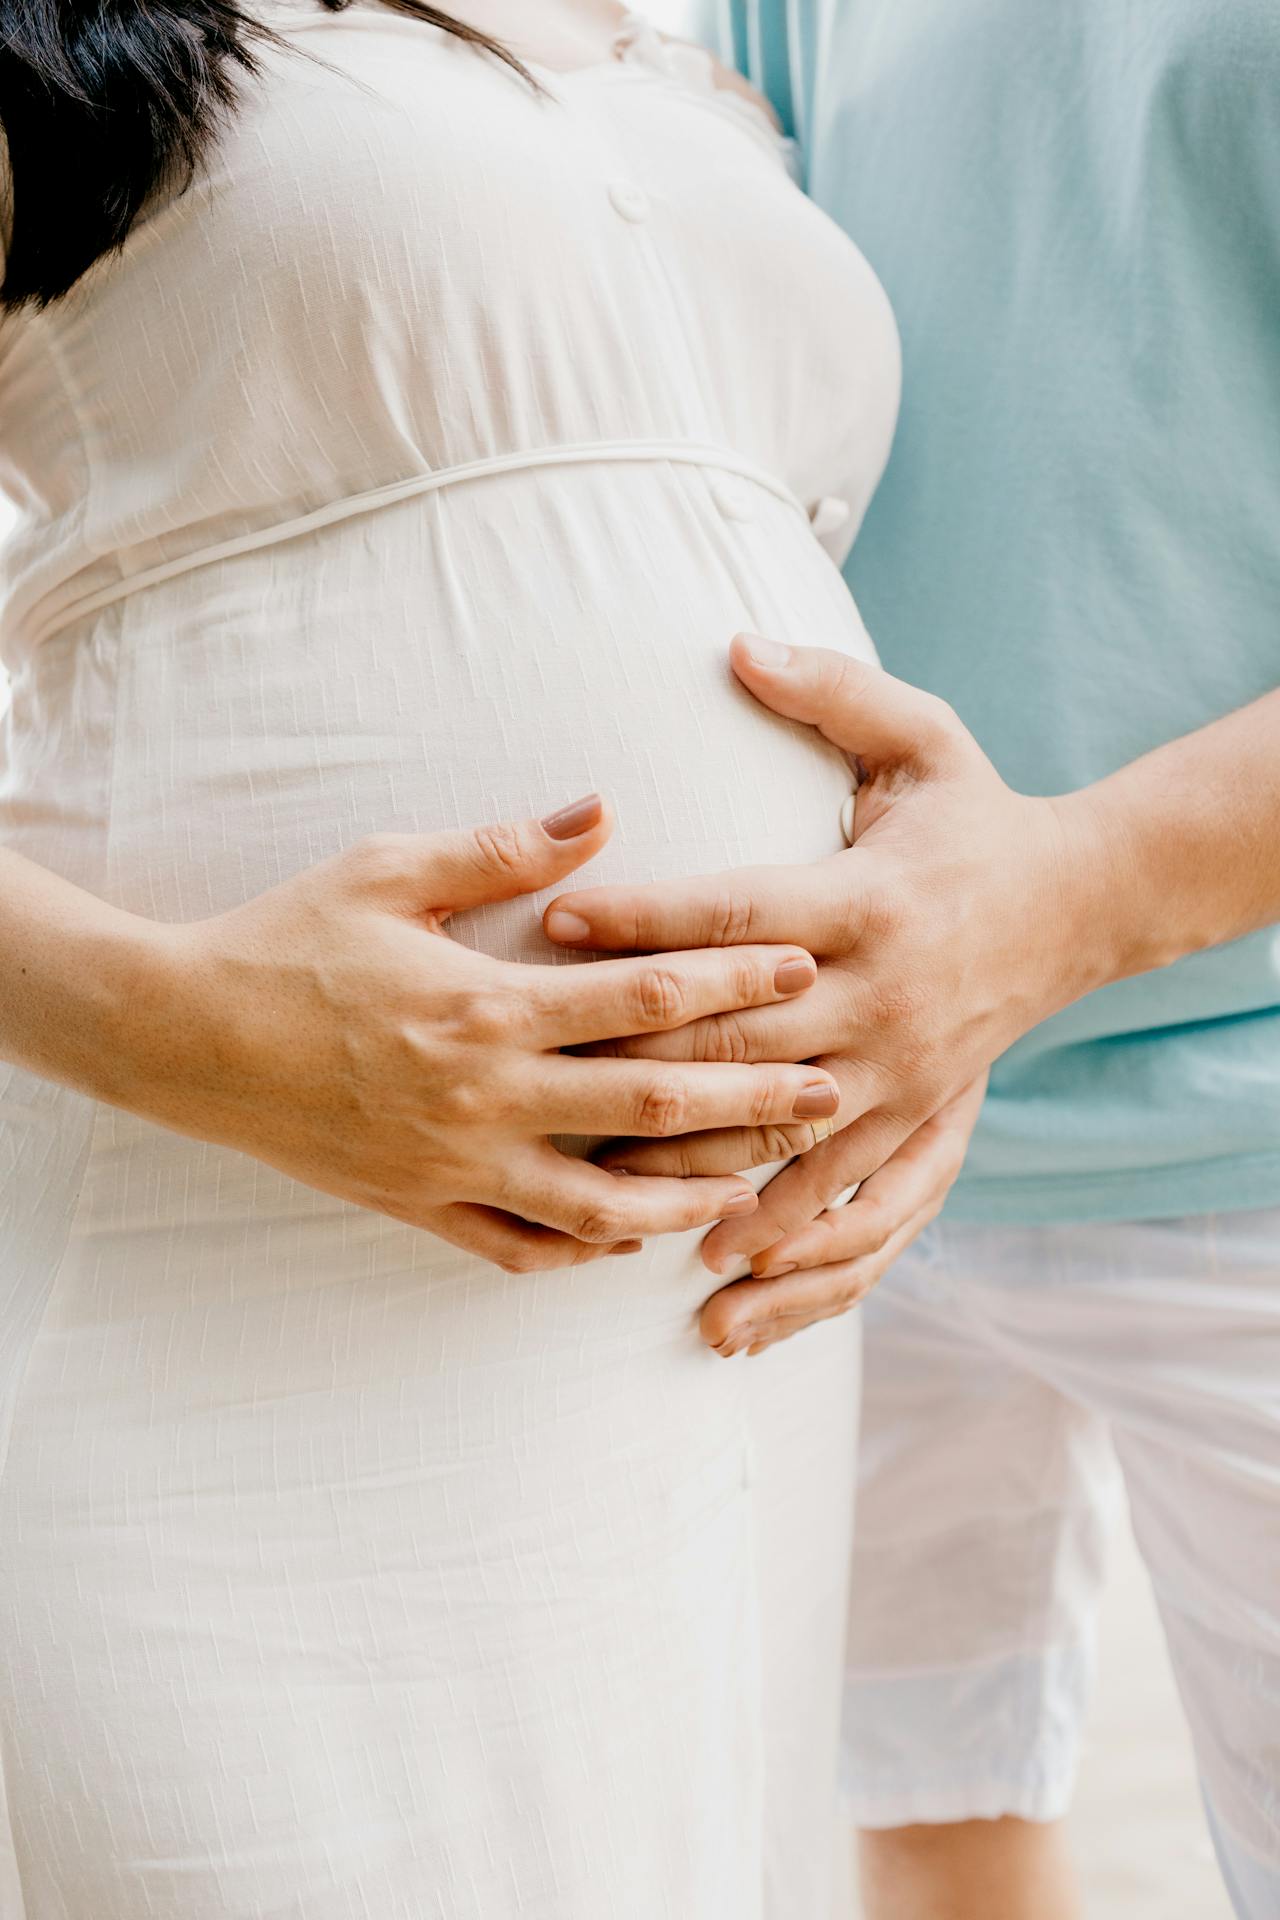 Salud reproductiva y acceso a procedimientos de fertilidad: Senado insta al desarrollo de estrategias